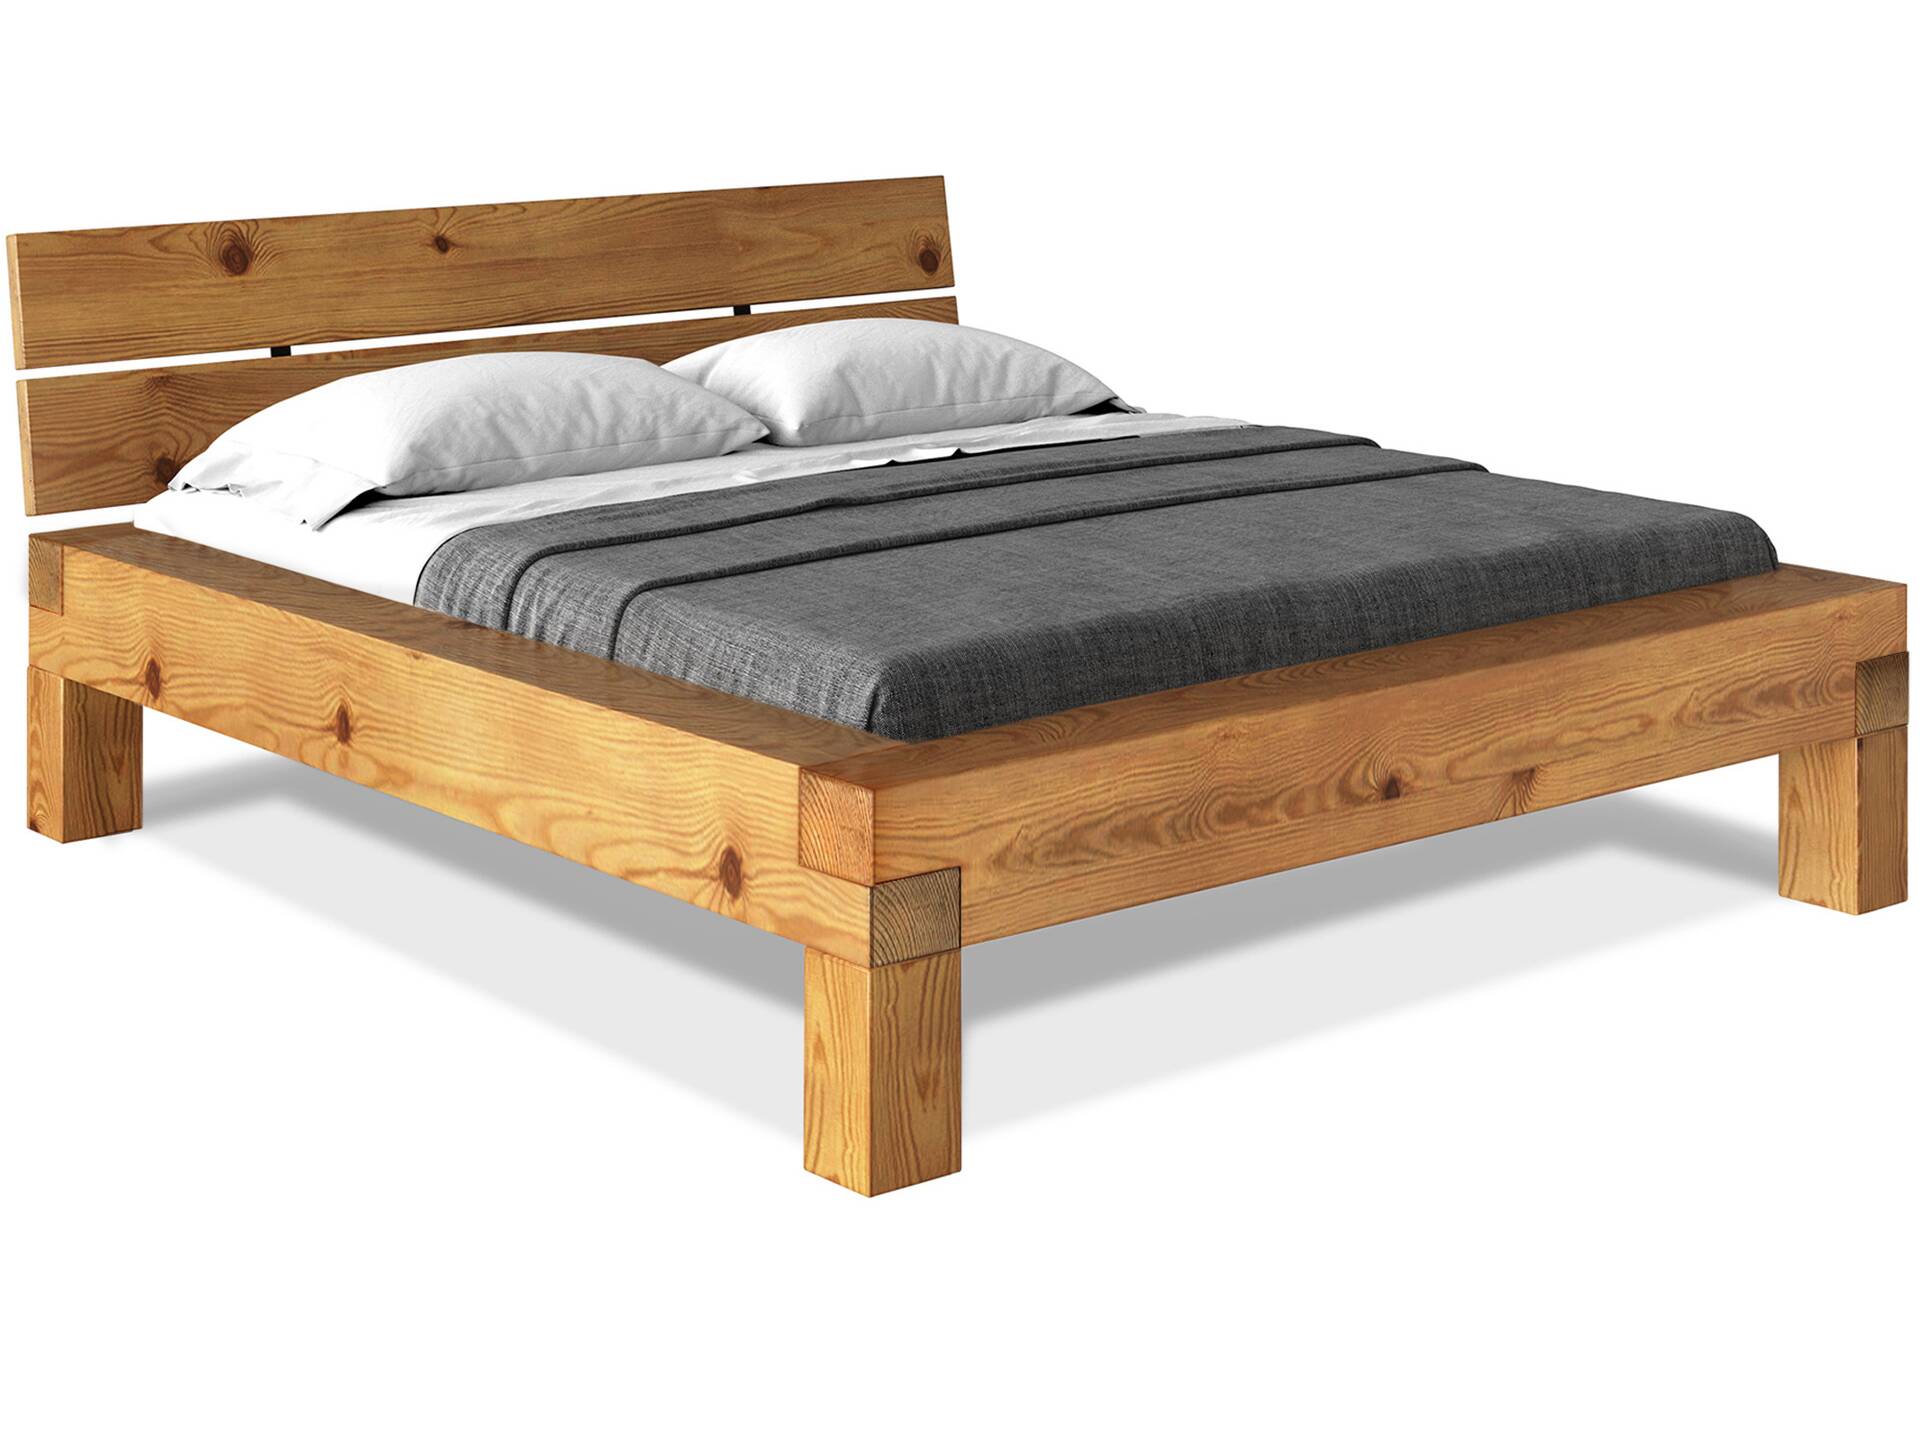 CURBY 4-Fuß-Balkenbett mit Kopfteil, Material Massivholz, Thermo-Fichte 140 x 220 cm | natur | Standardhöhe